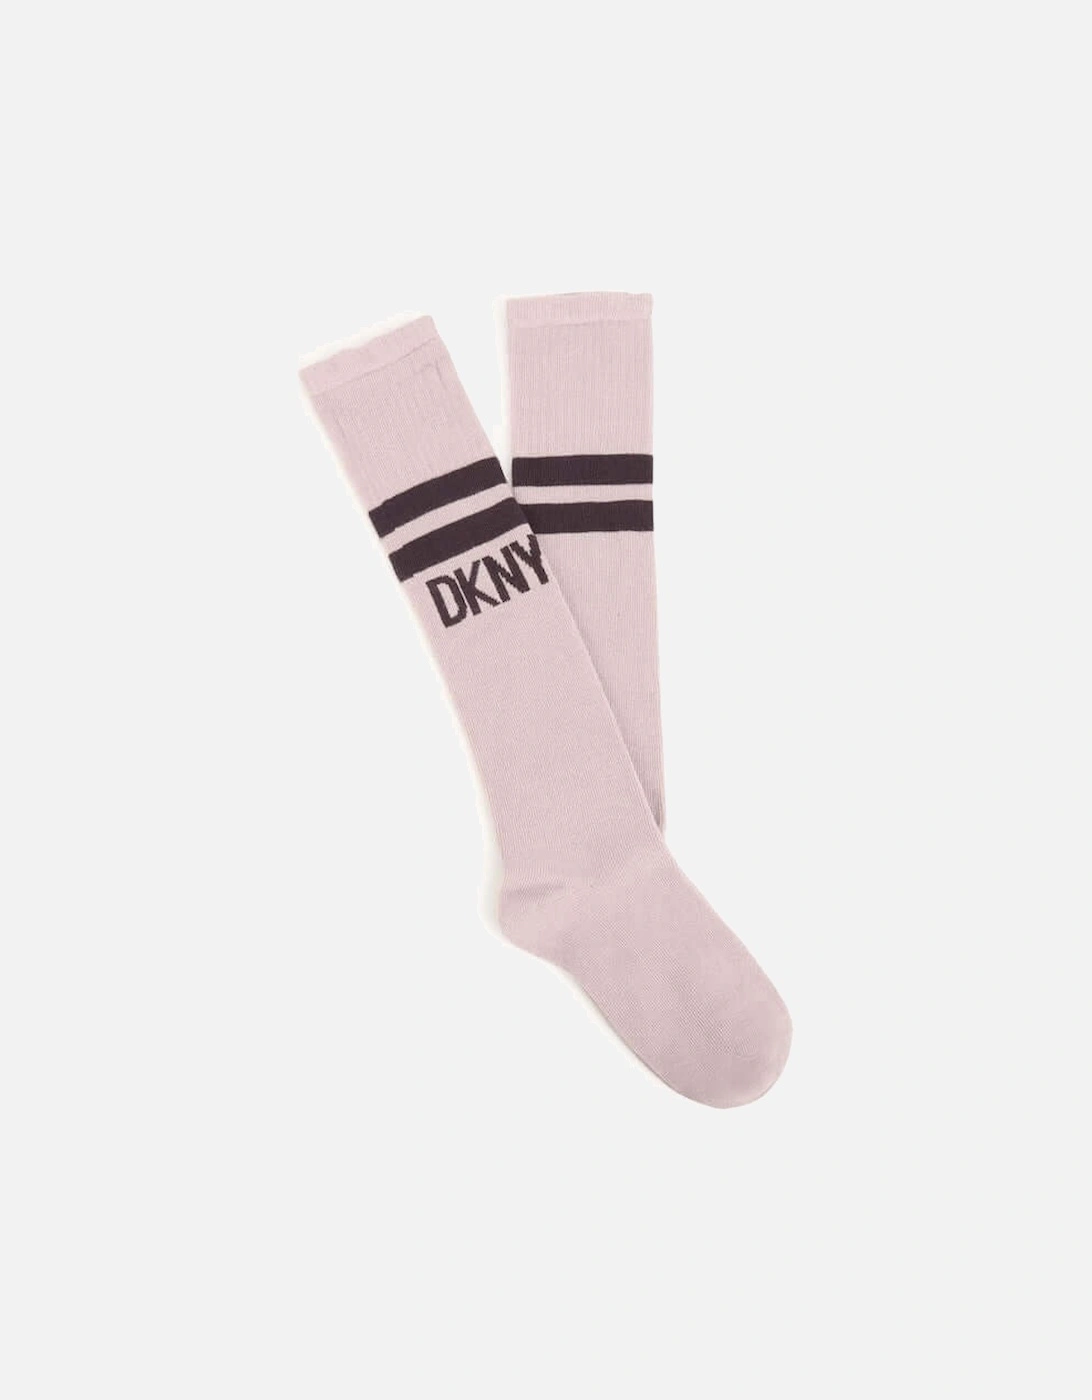 Girls Dusky Pink Knee Socks, 2 of 1